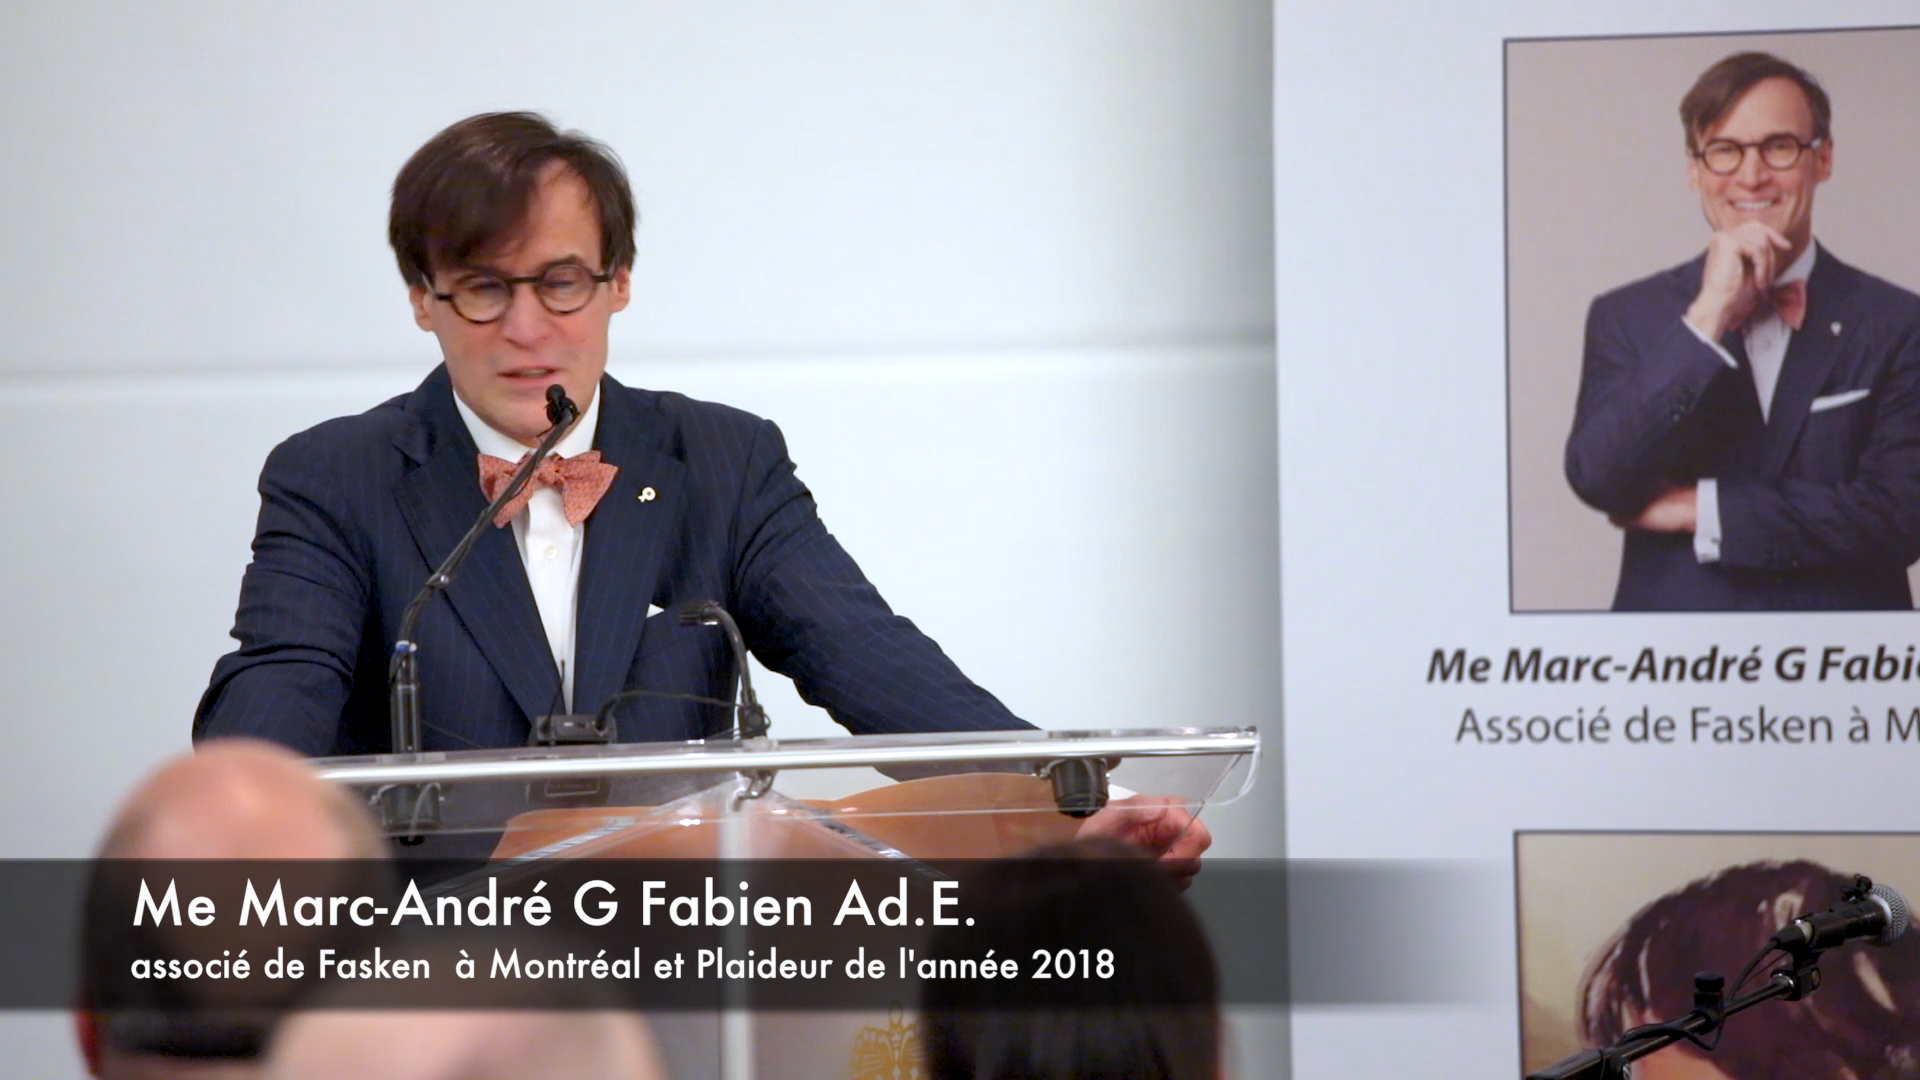 Vidéos des allocutions prononcées lors du dîner du magasine Le Monde Juridique nommant Me Marc-André G. Fabien Plaideur de l’Année 2018